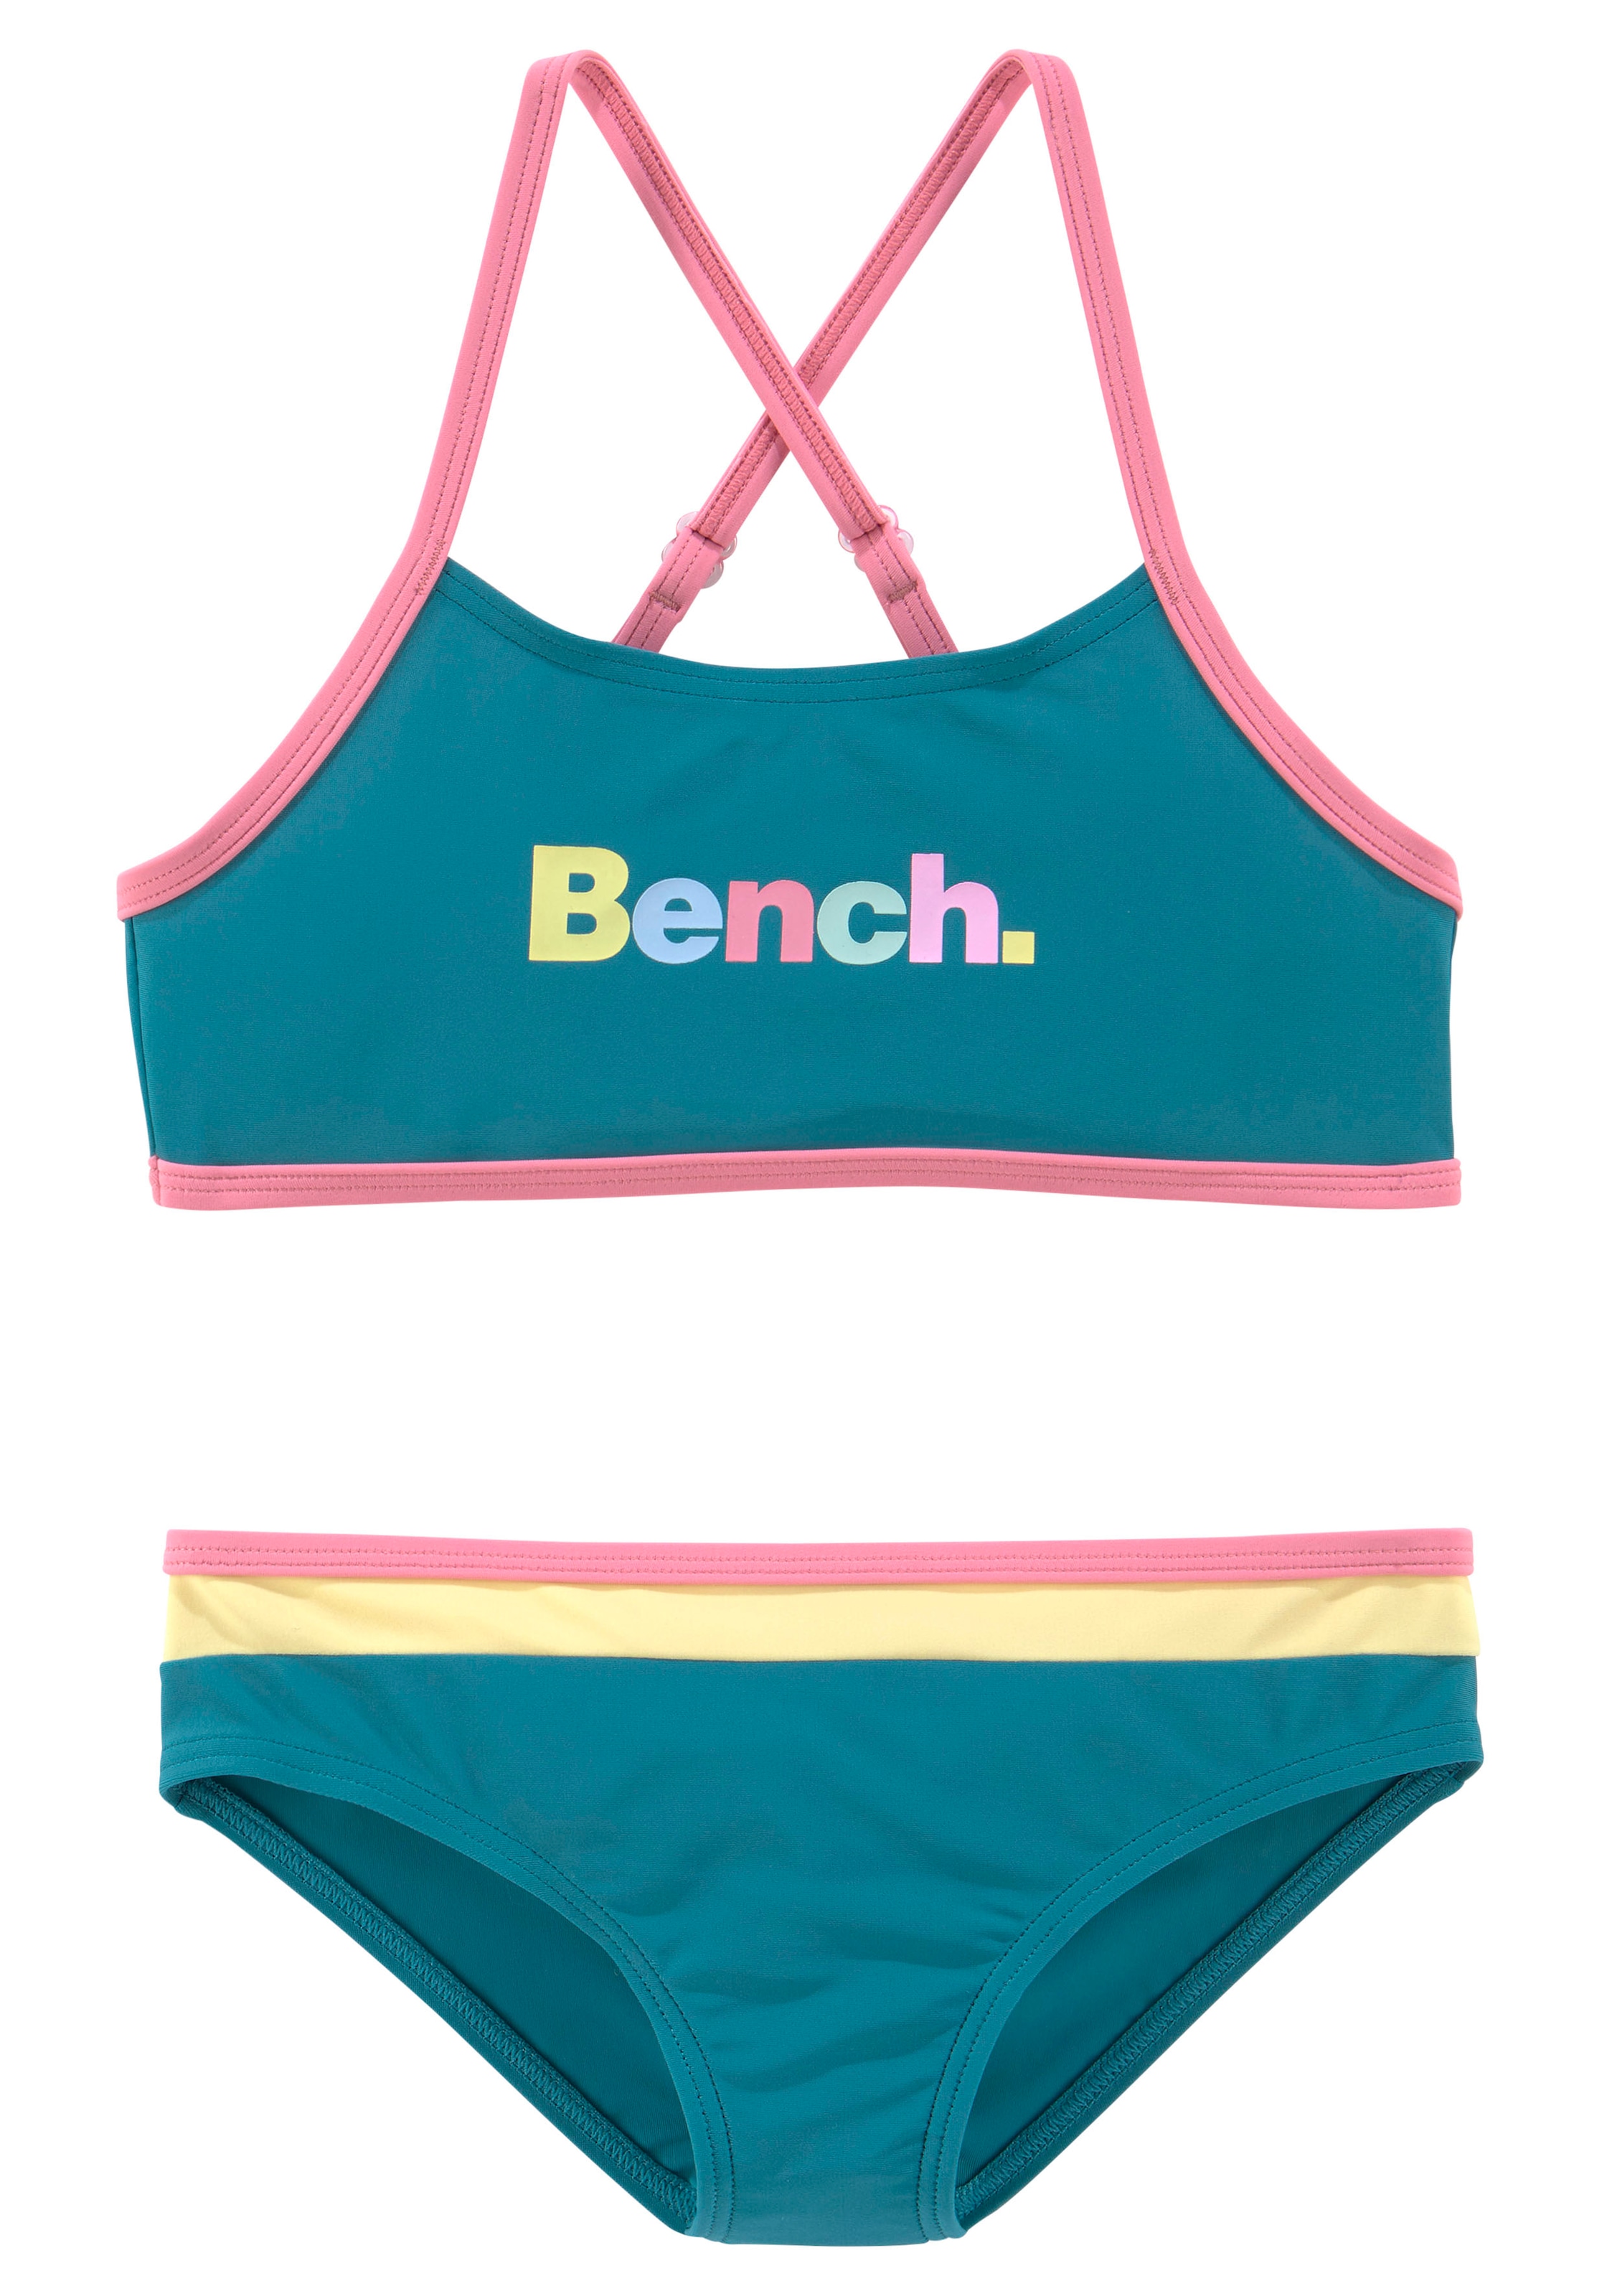 Bench. Bustier-Bikini, Details mit bei OTTO bunten